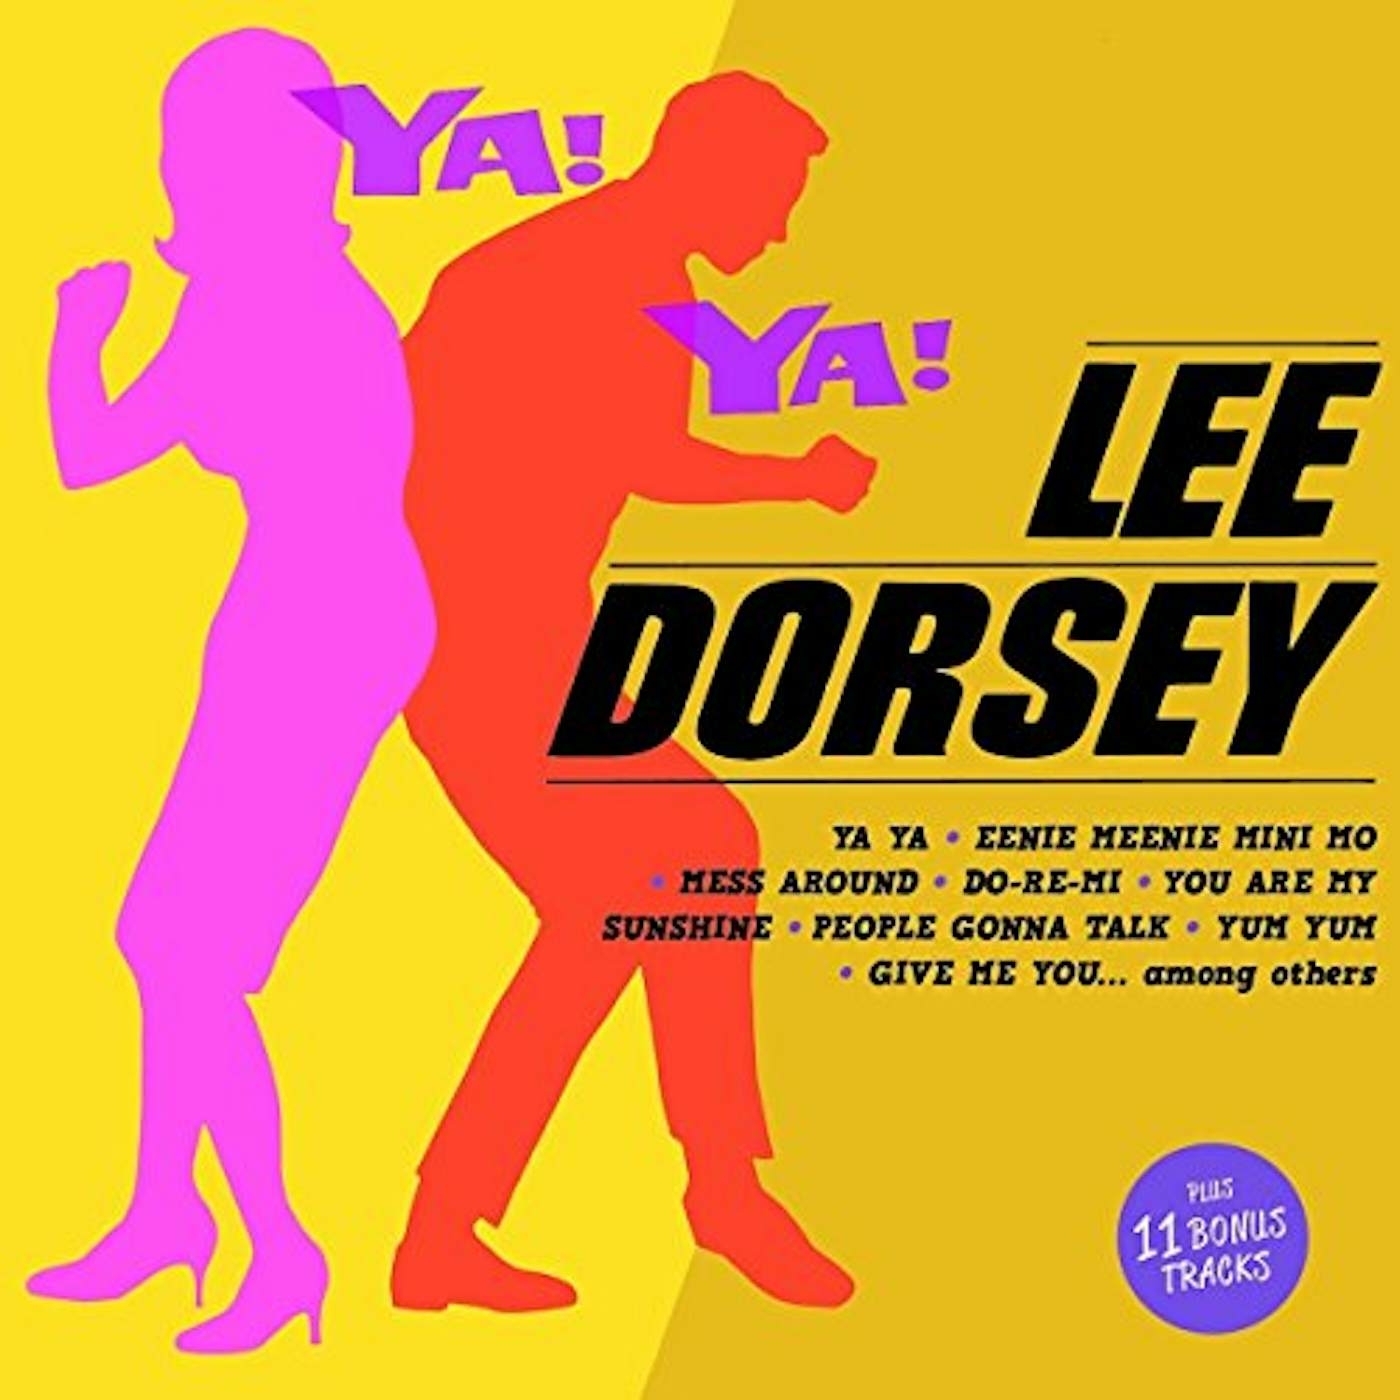 Lee Dorsey YA! YA! + 11 BONUS TRACKS CD